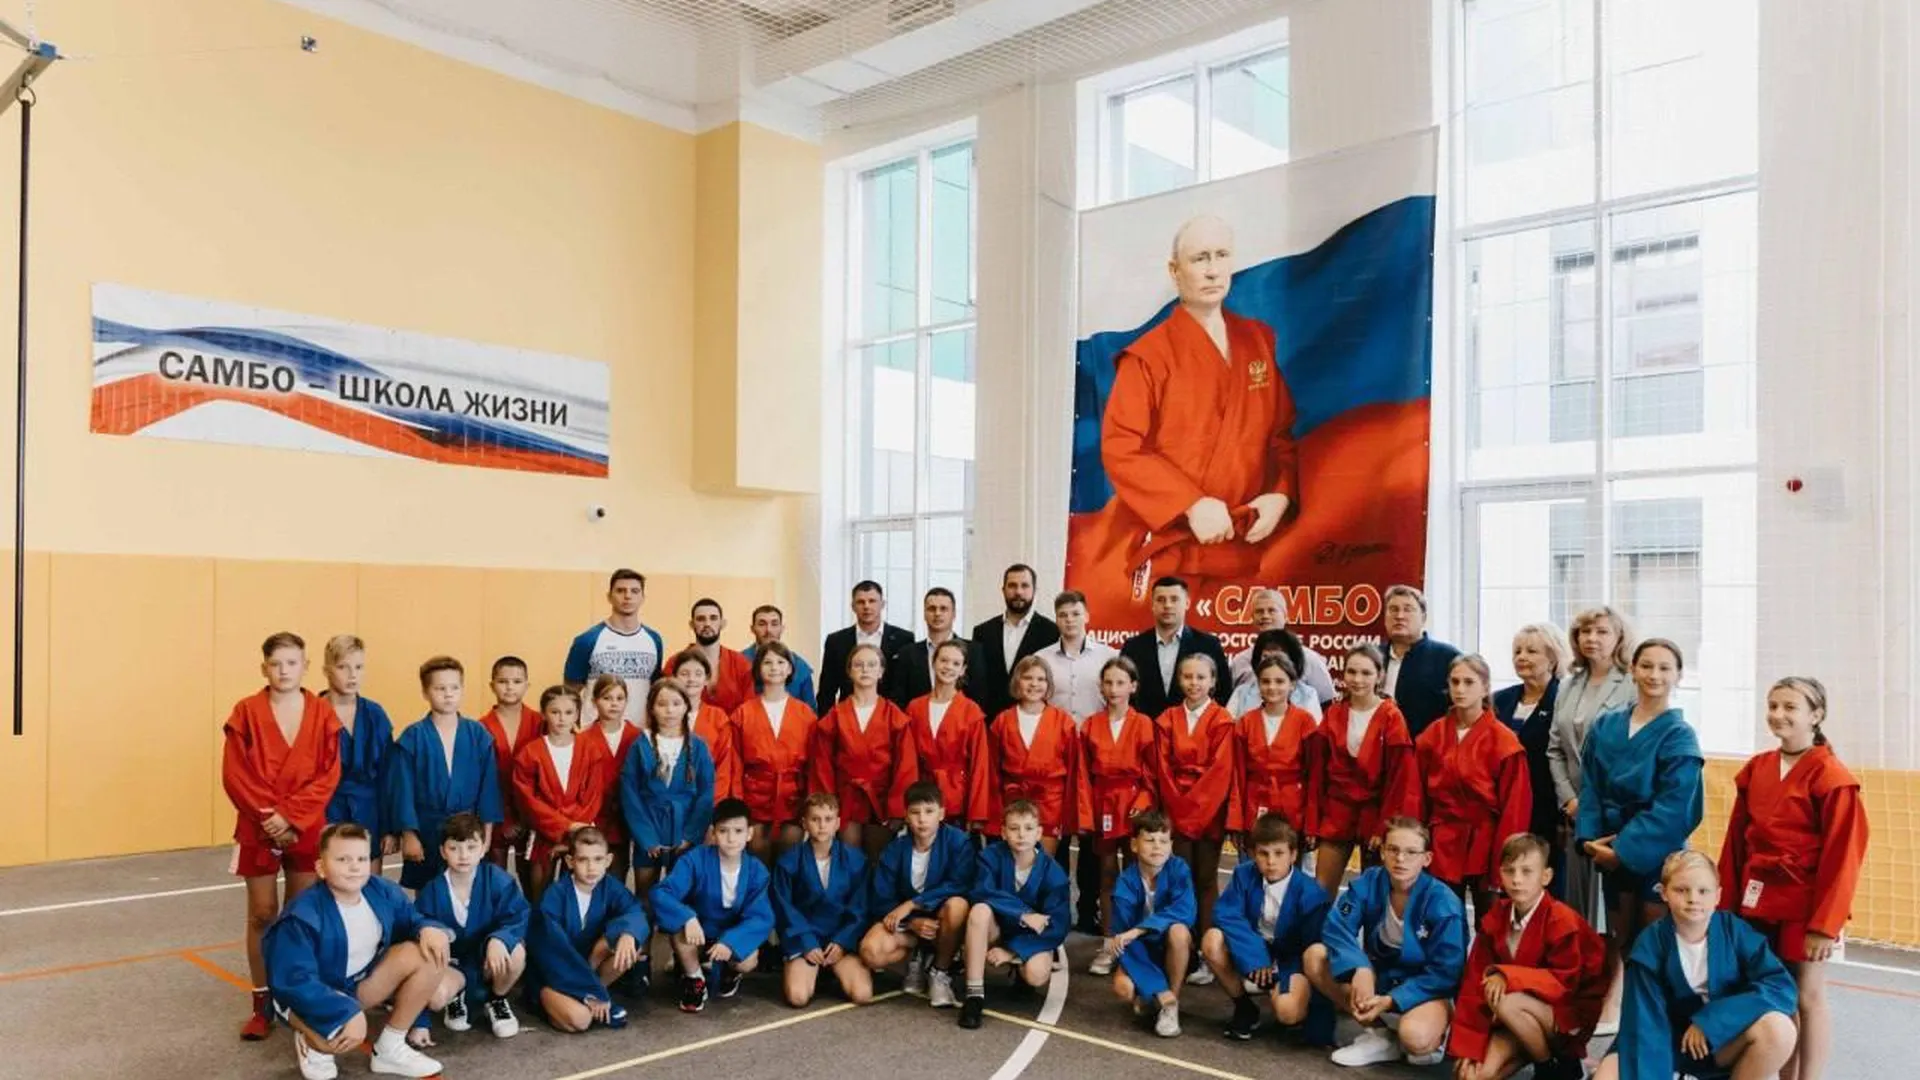 Глава городского округа Чехов рассказал о запуске в школе президентского проекта по обучению самбо